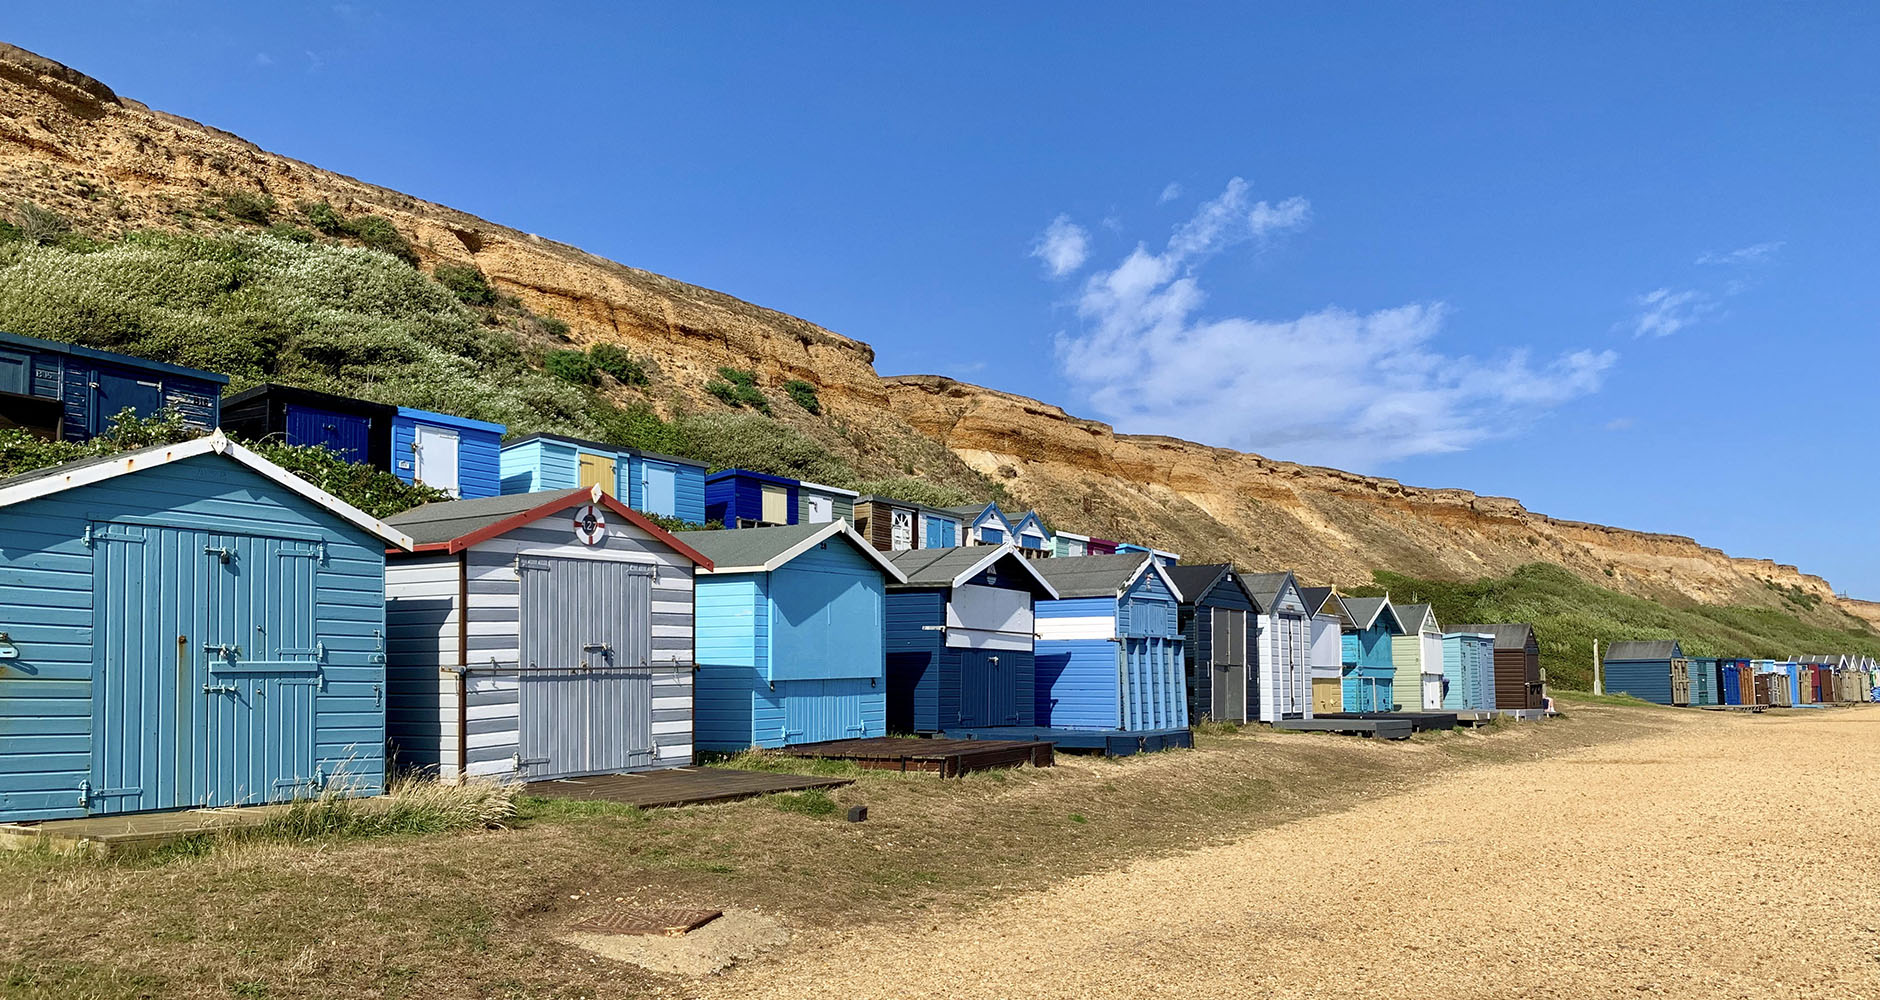 Bright coloured beach huts in Barton-on-Sea